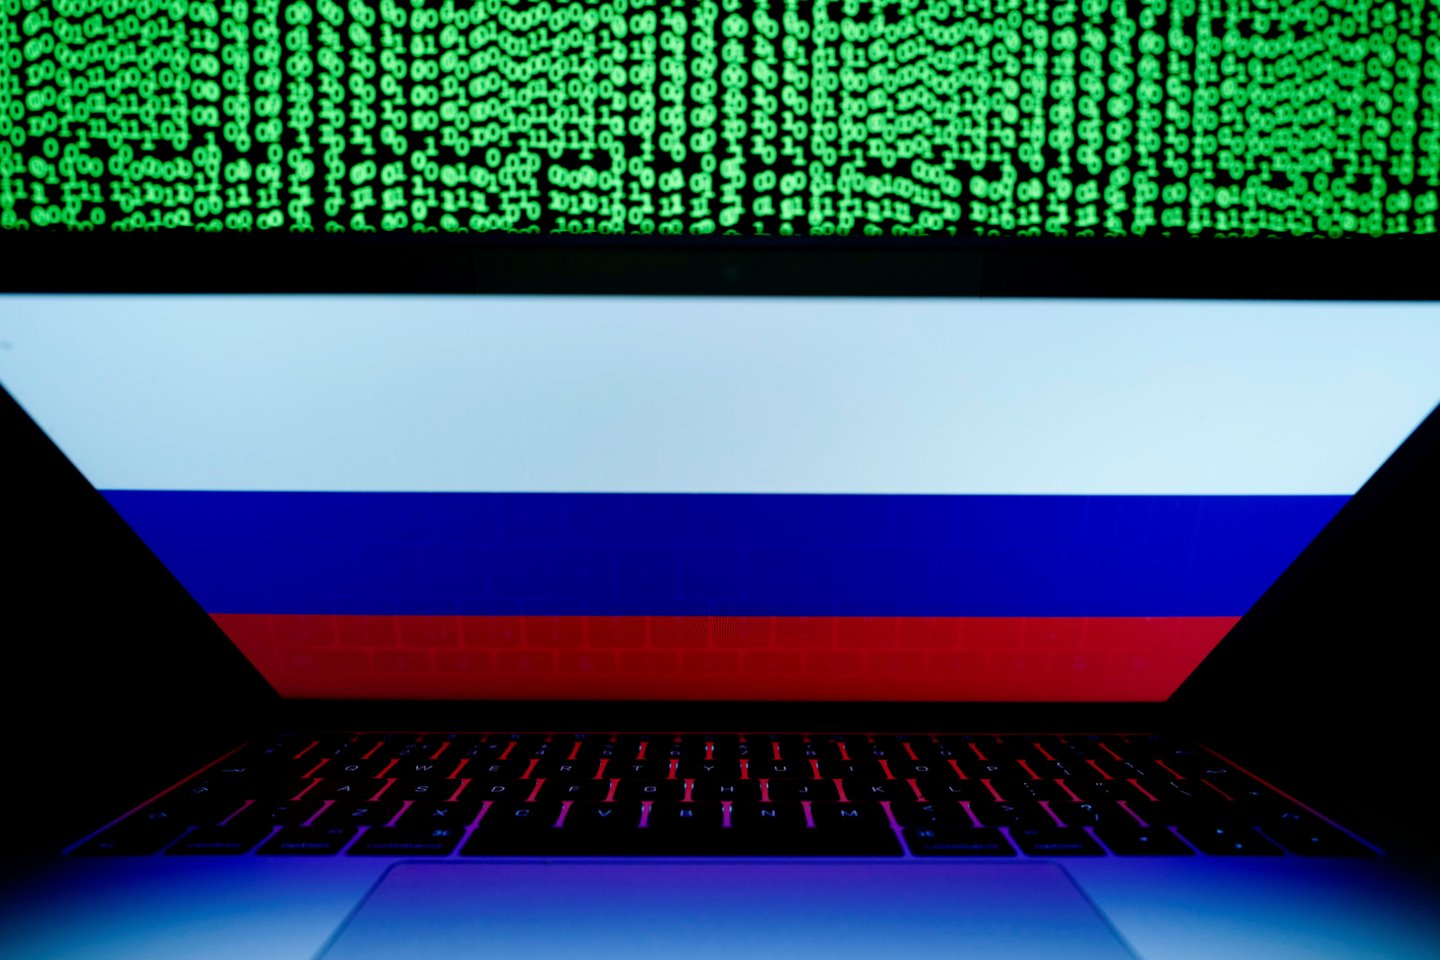 Lenkija paskelbė apie kovos su kibernetiniais nusikaltimais agentūros steigimą, praėjus mėnesiui po kibernetinės atakos prieš Lenkijos politikus, Varšuvos teigimu, įvykdytos iš Rusijos.<br>REUTERS/Scanpix nuotr.